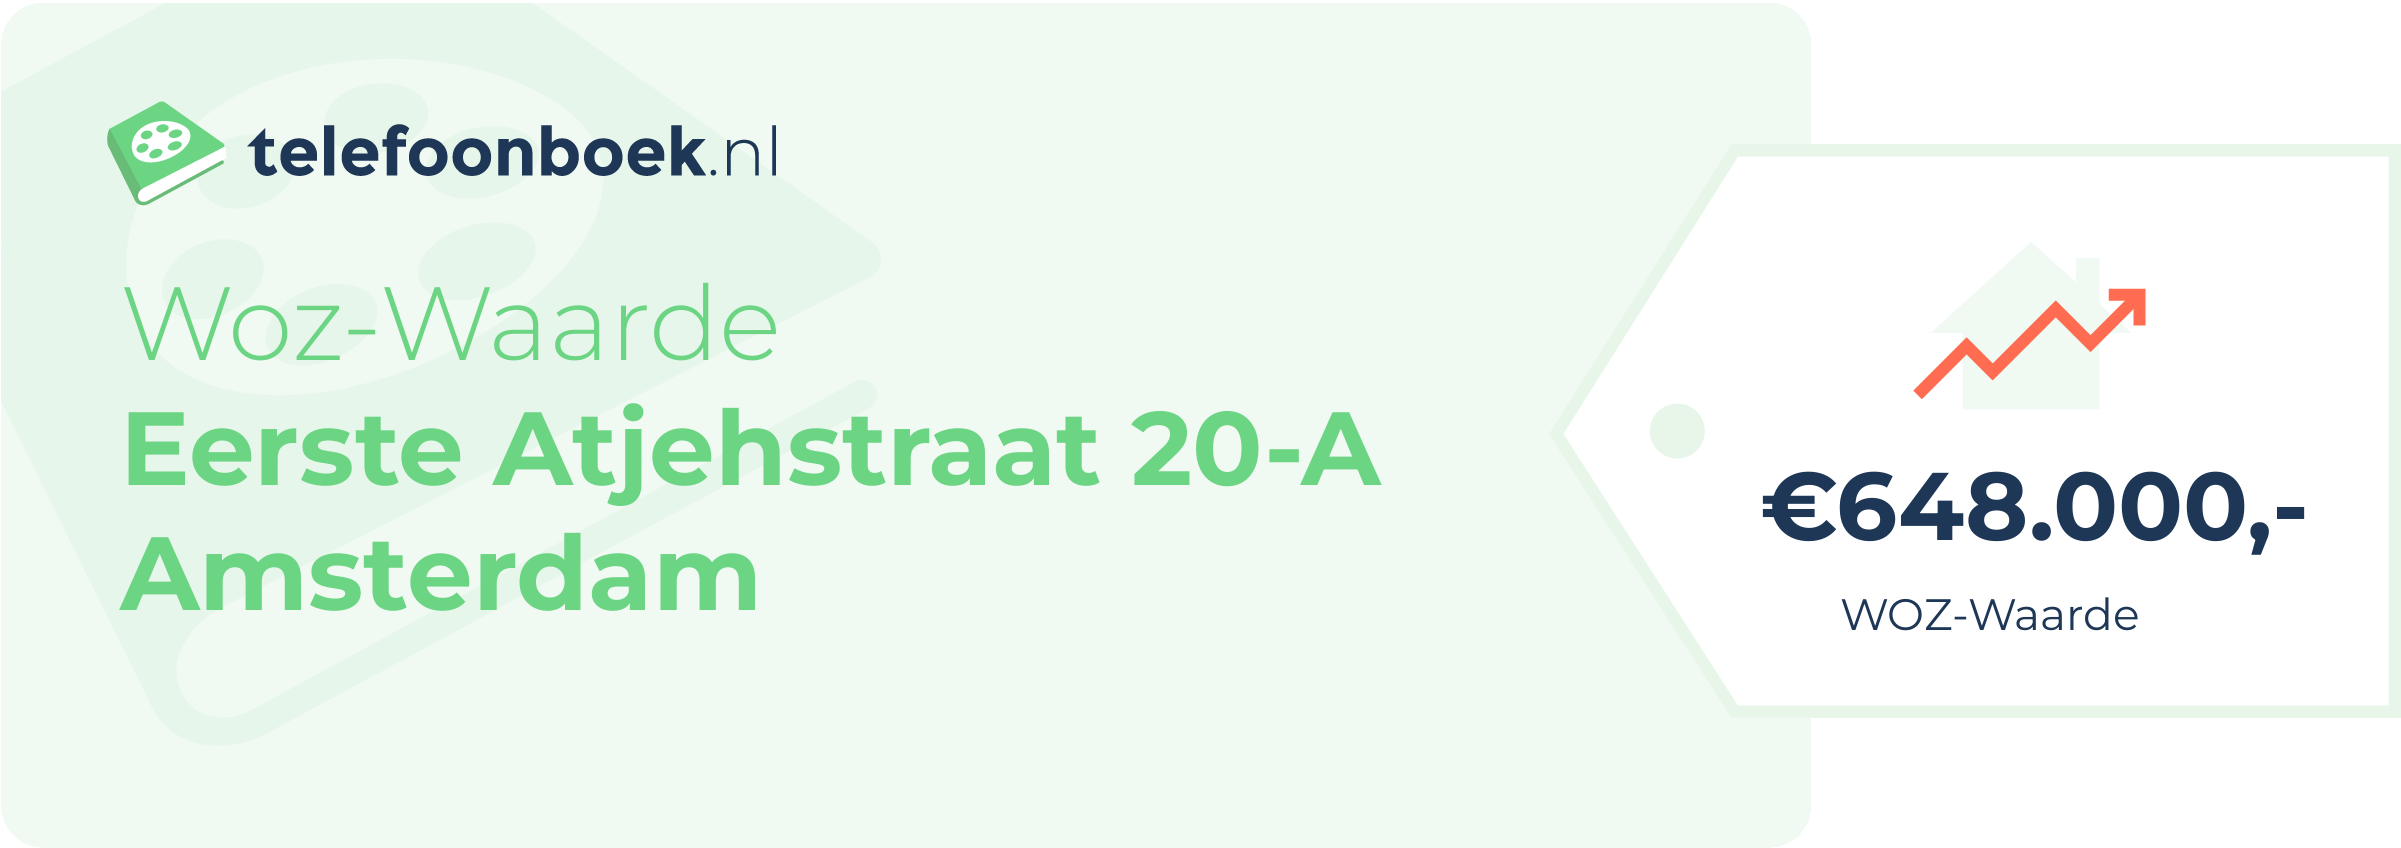 WOZ-waarde Eerste Atjehstraat 20-A Amsterdam